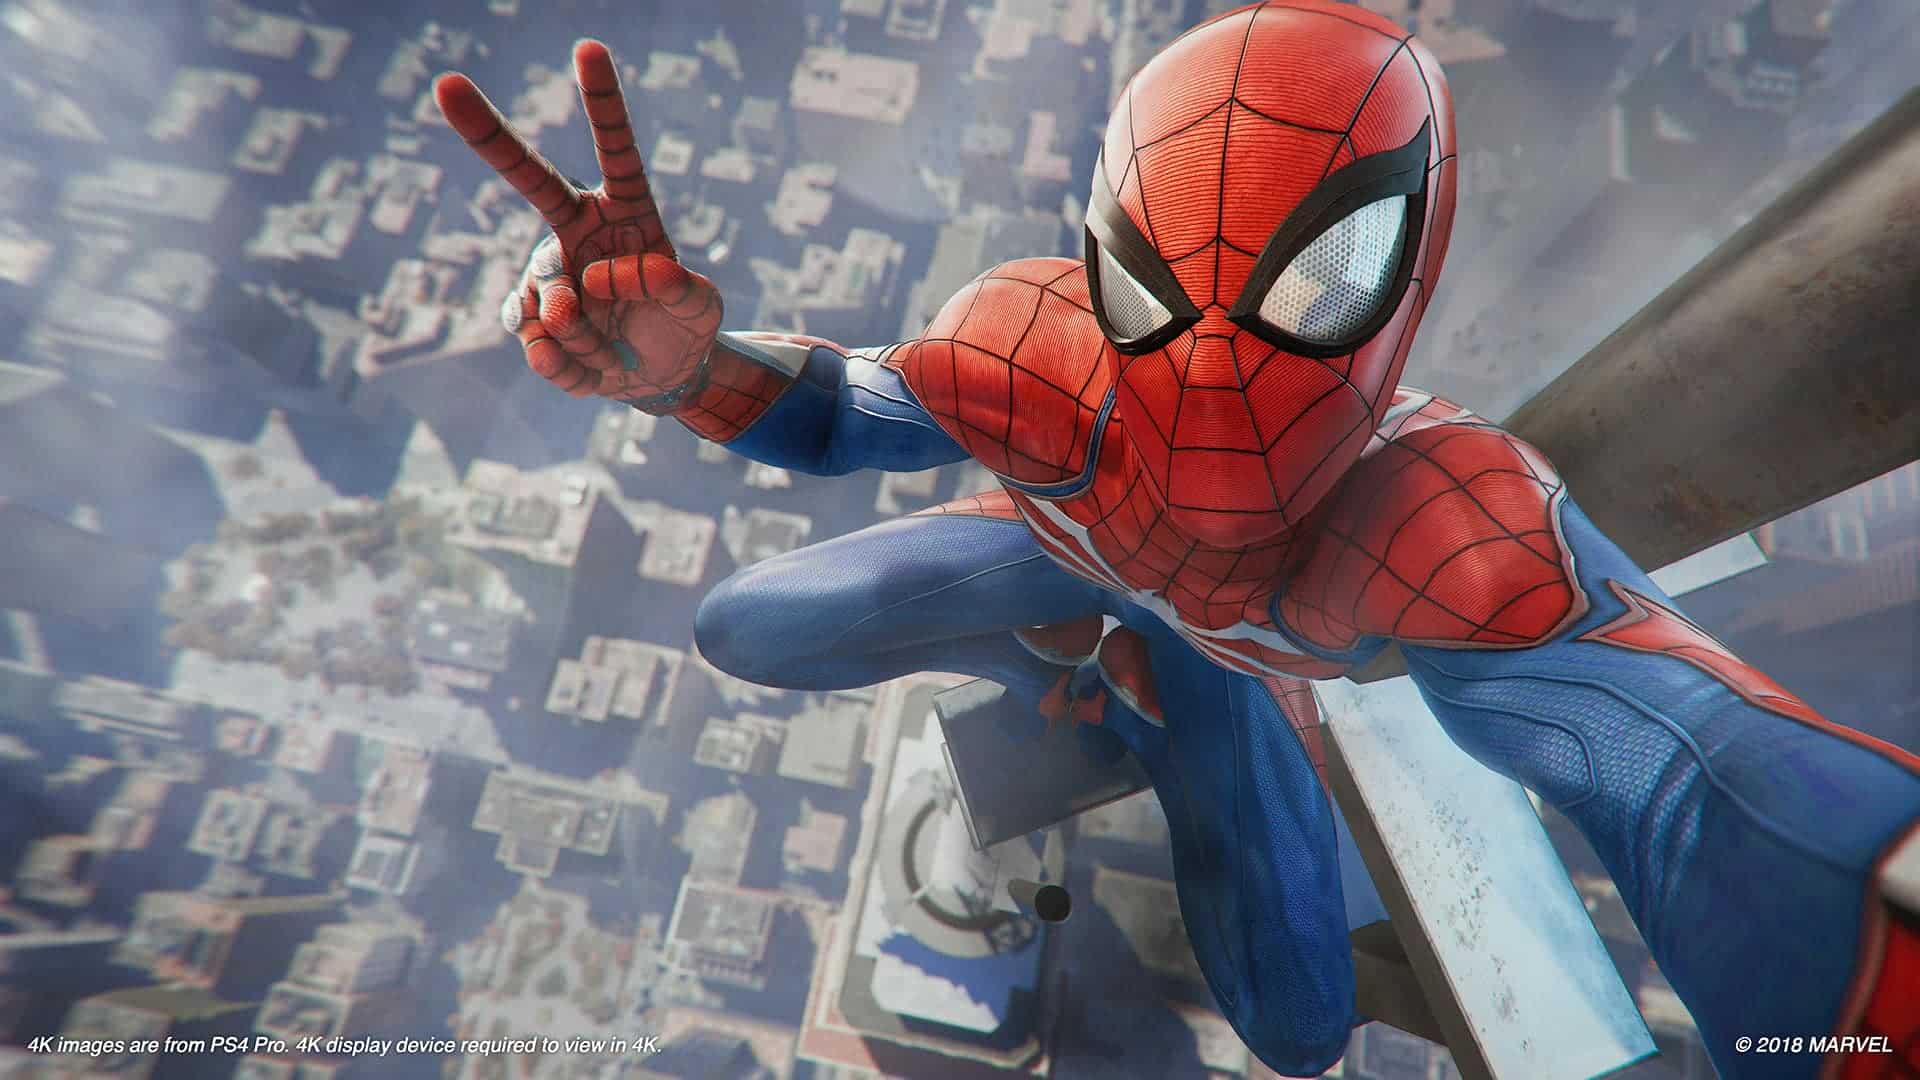  اکانت قانونی Marvel's Spider-Man: Game of the Year Edition برای PS4 & PS5 